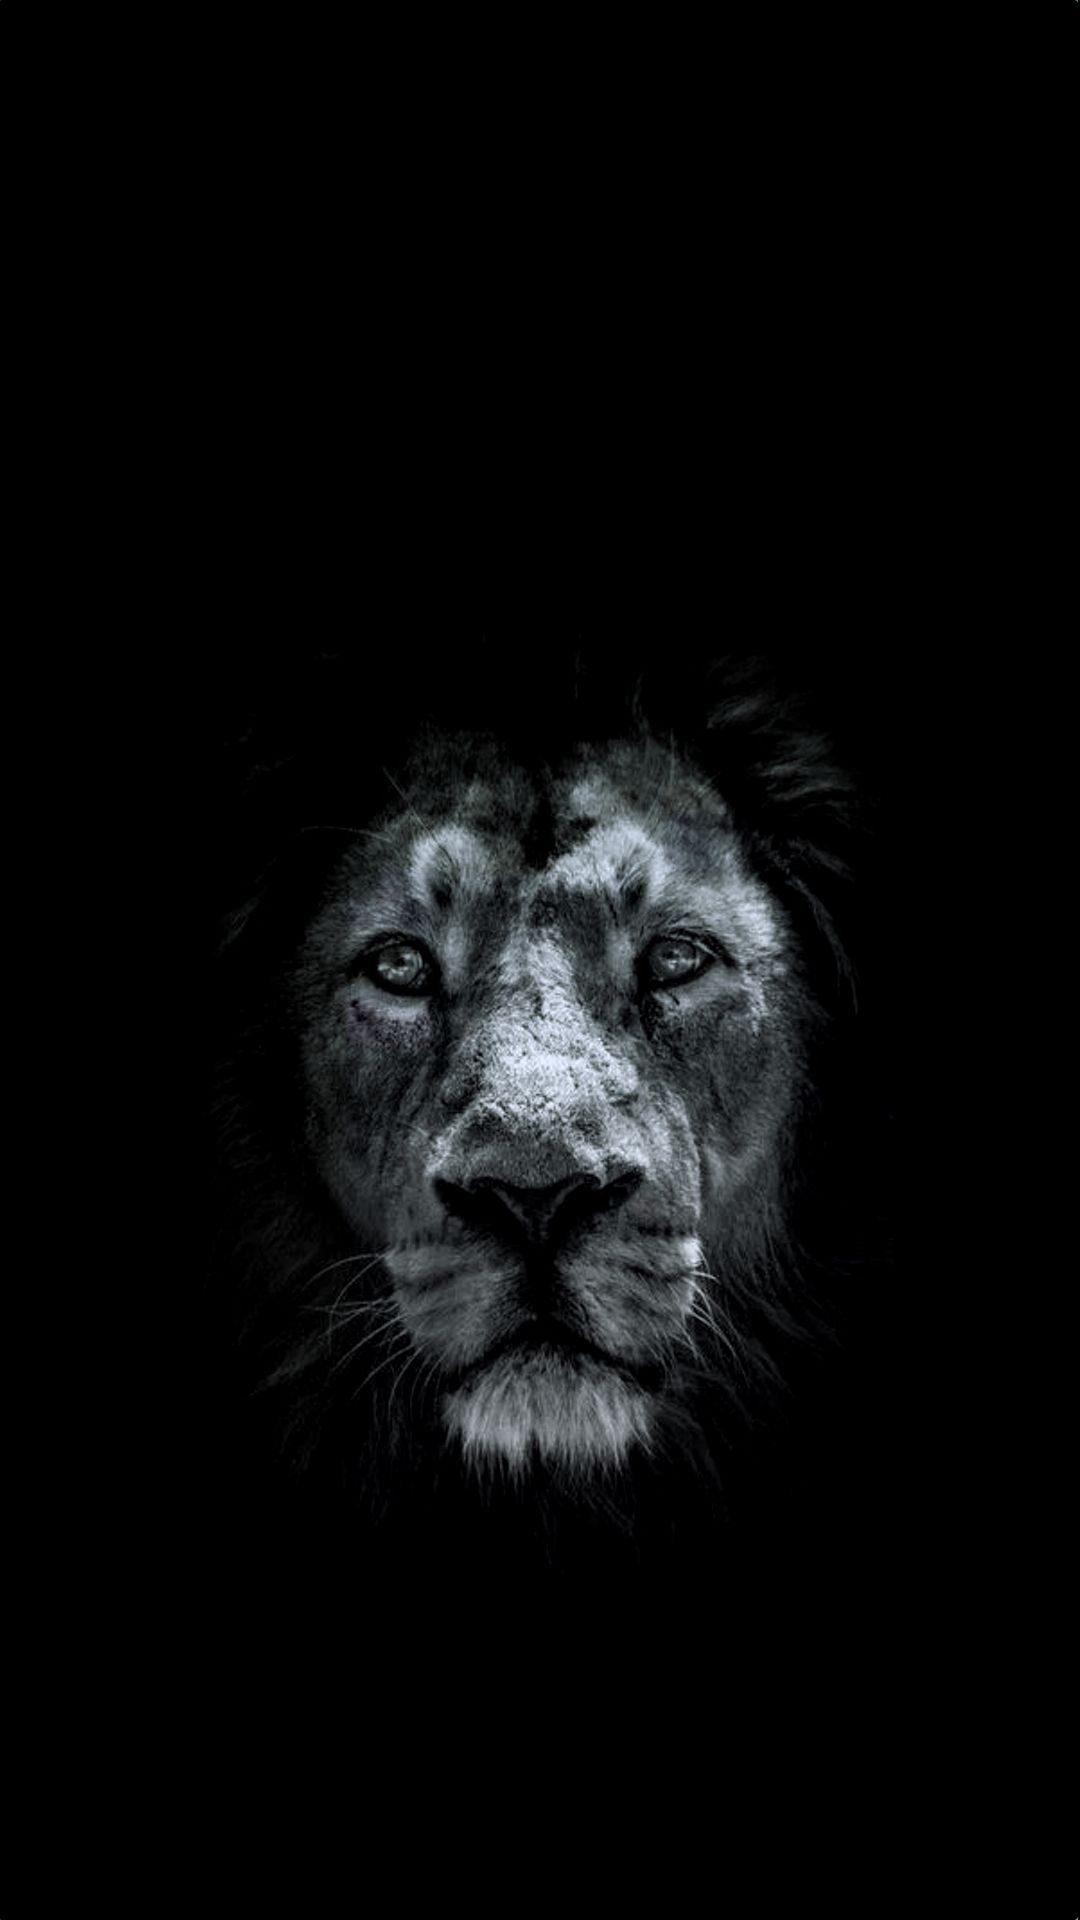 Lion Black Background Images  Free Download on Freepik